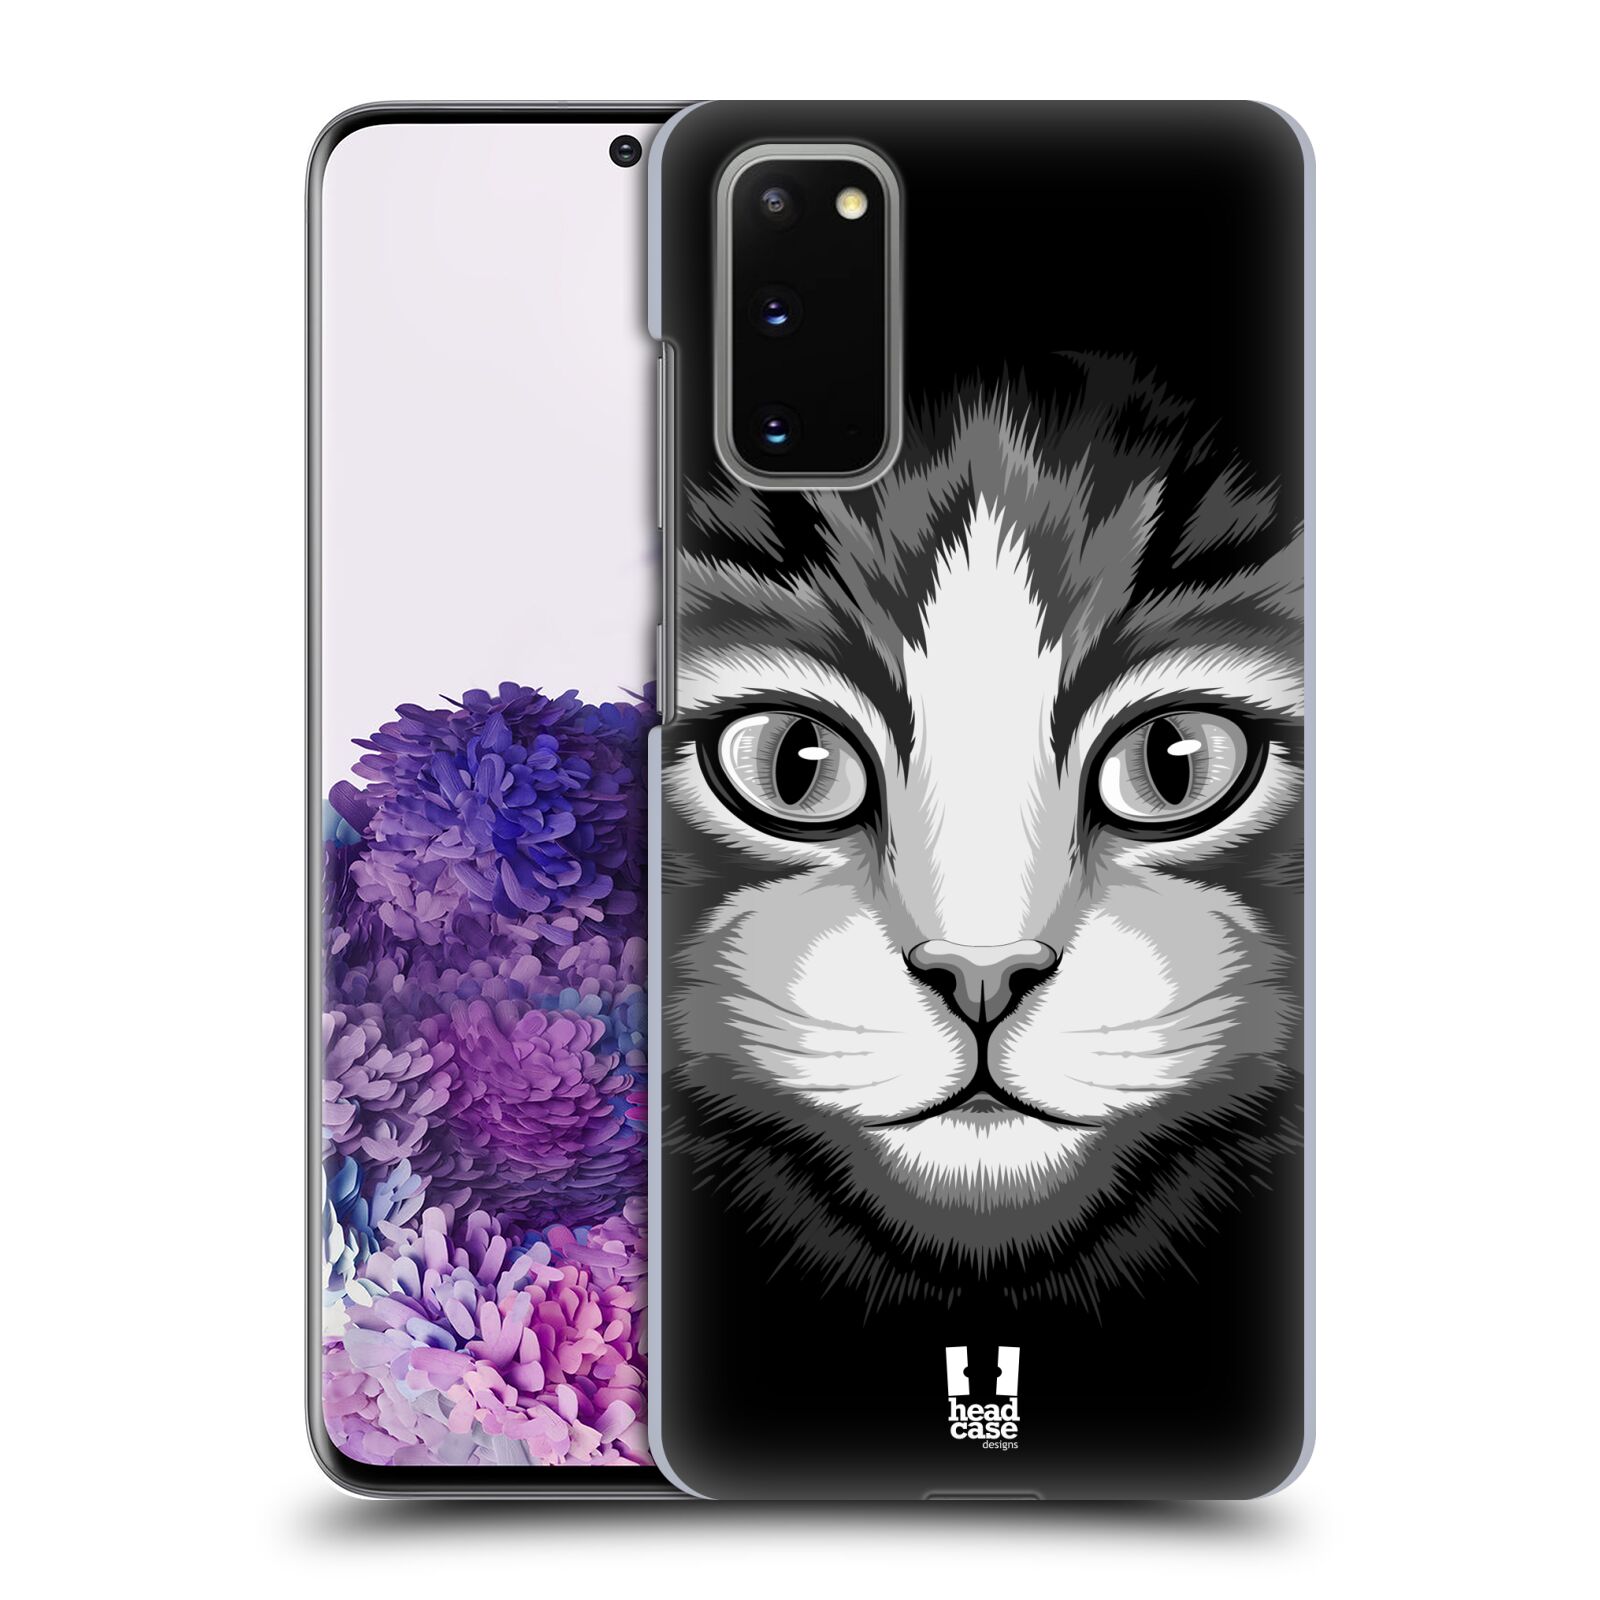 Pouzdro na mobil Samsung Galaxy S20 - HEAD CASE - vzor Zvíře kreslená tvář 2 kočička